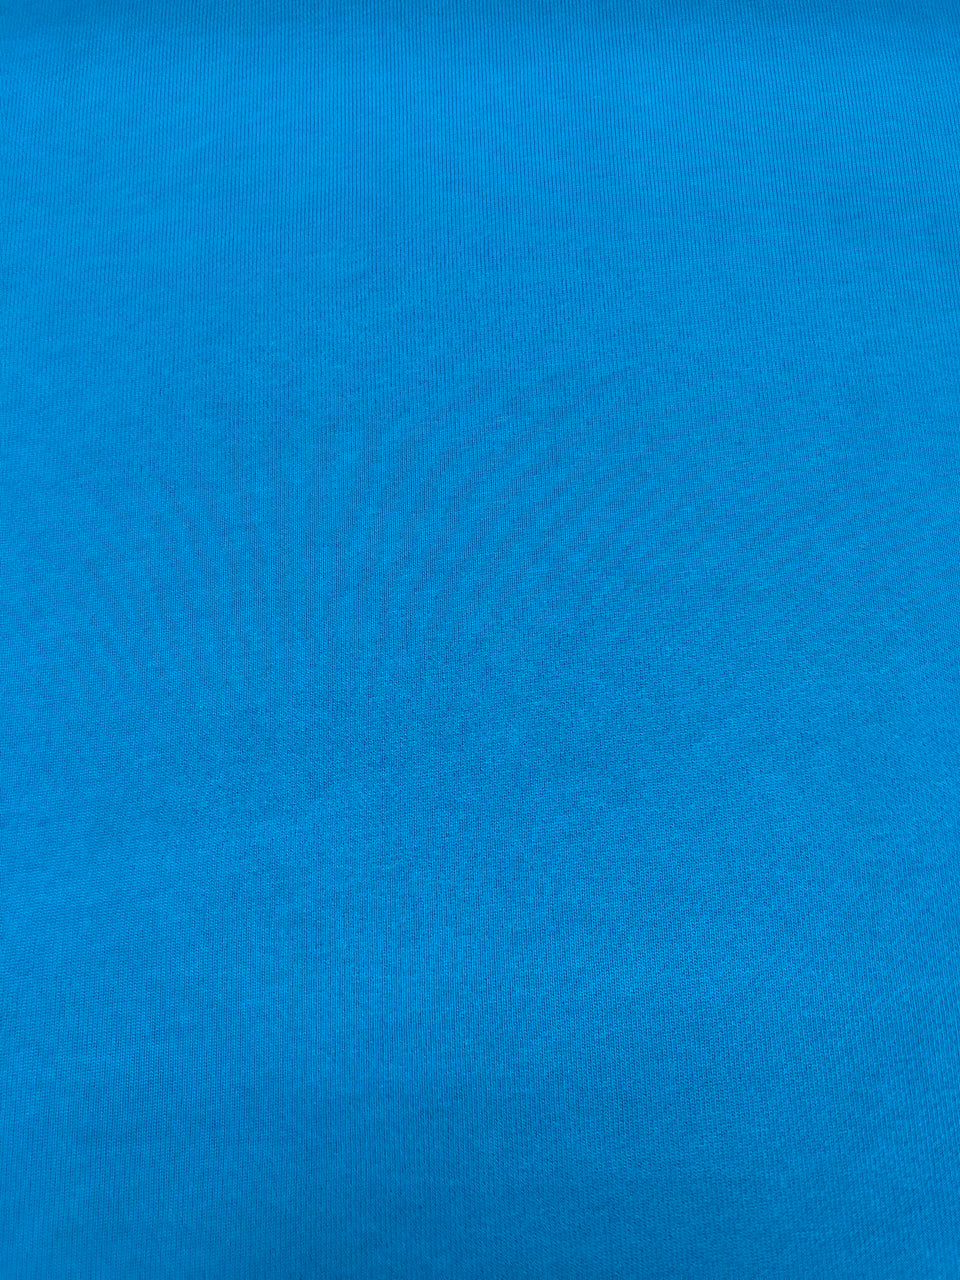 Turquoise  - French Fleece